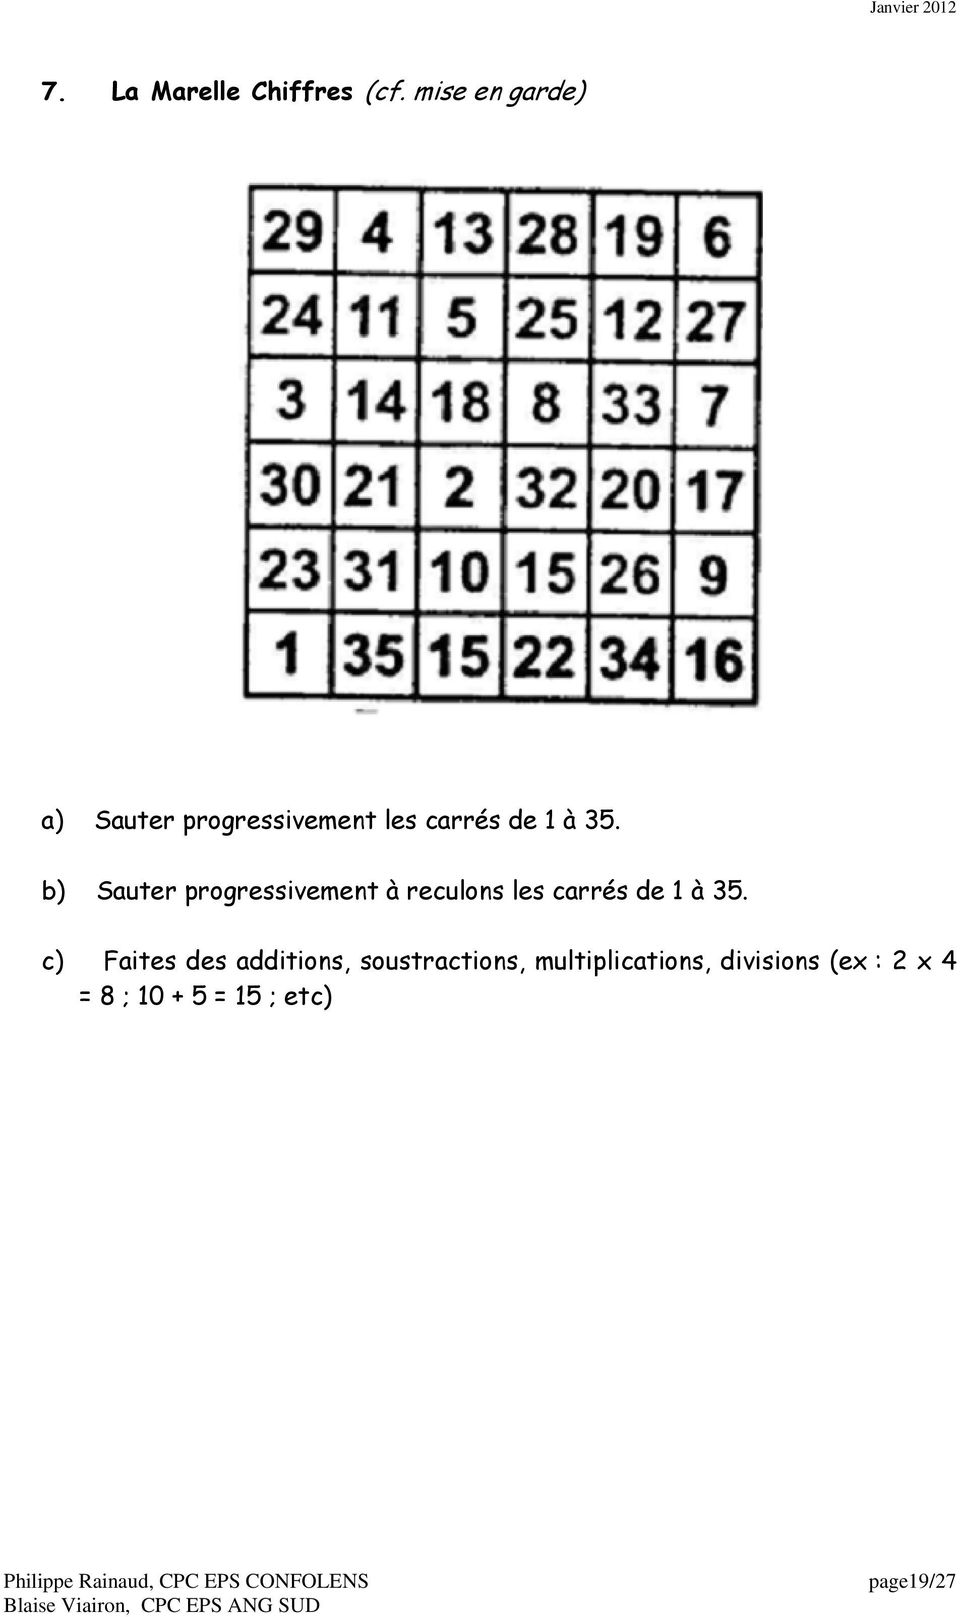 b) Sauter progressivement à reculons les carrés de 1 à 35.